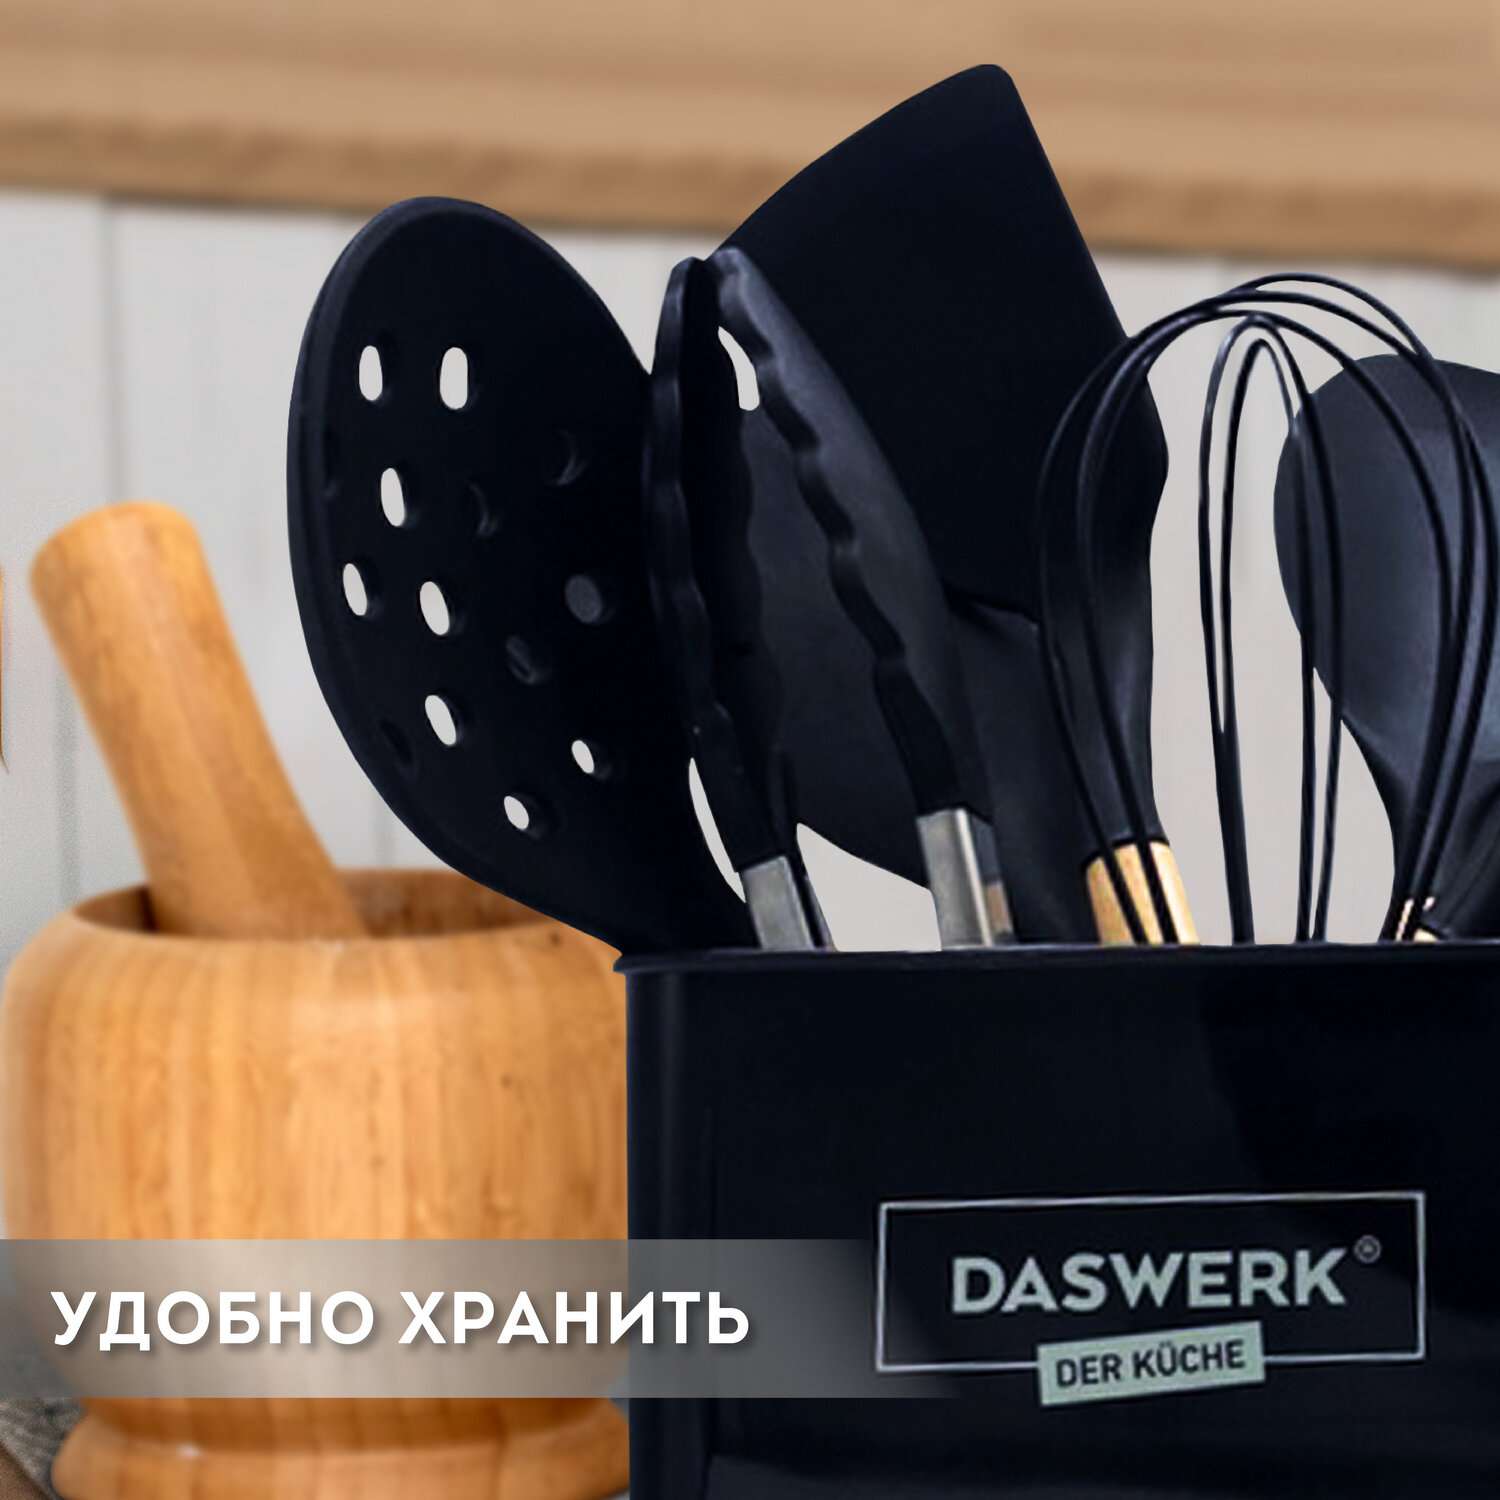 Набор кухонных принадлежностей DASWERK силиконовые с деревянными ручками 13 в 1 - фото 14